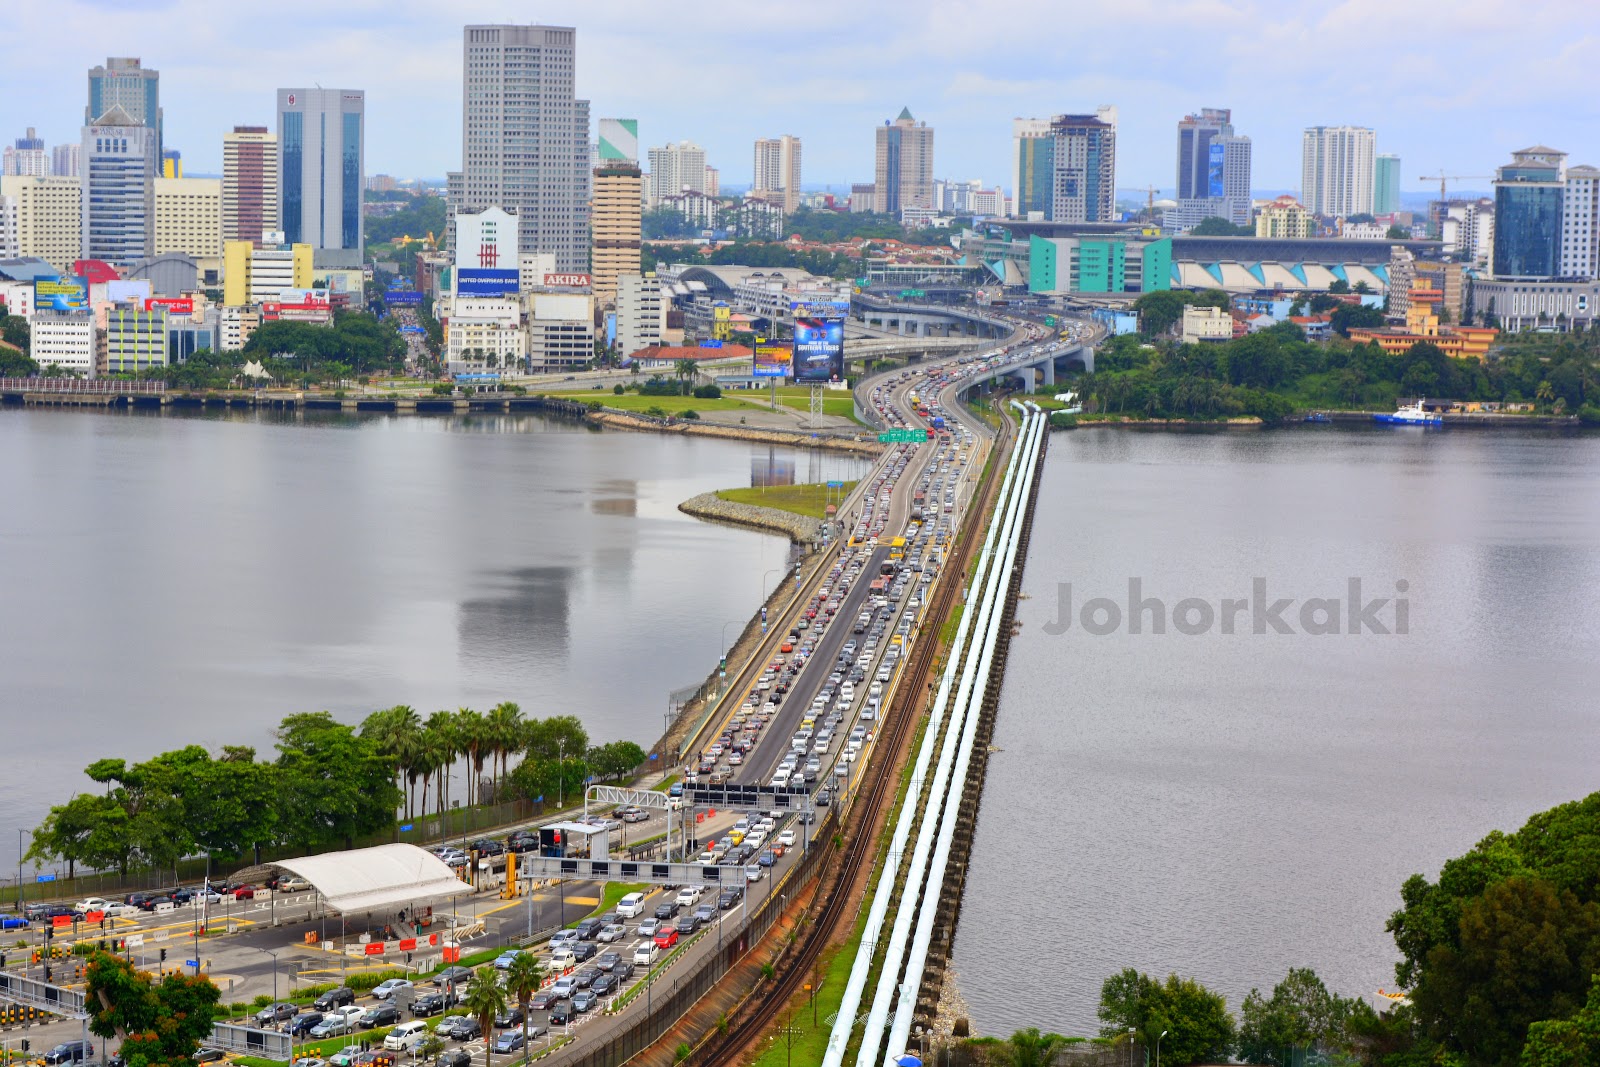 Johor Bahru Backgrounds on Wallpapers Vista